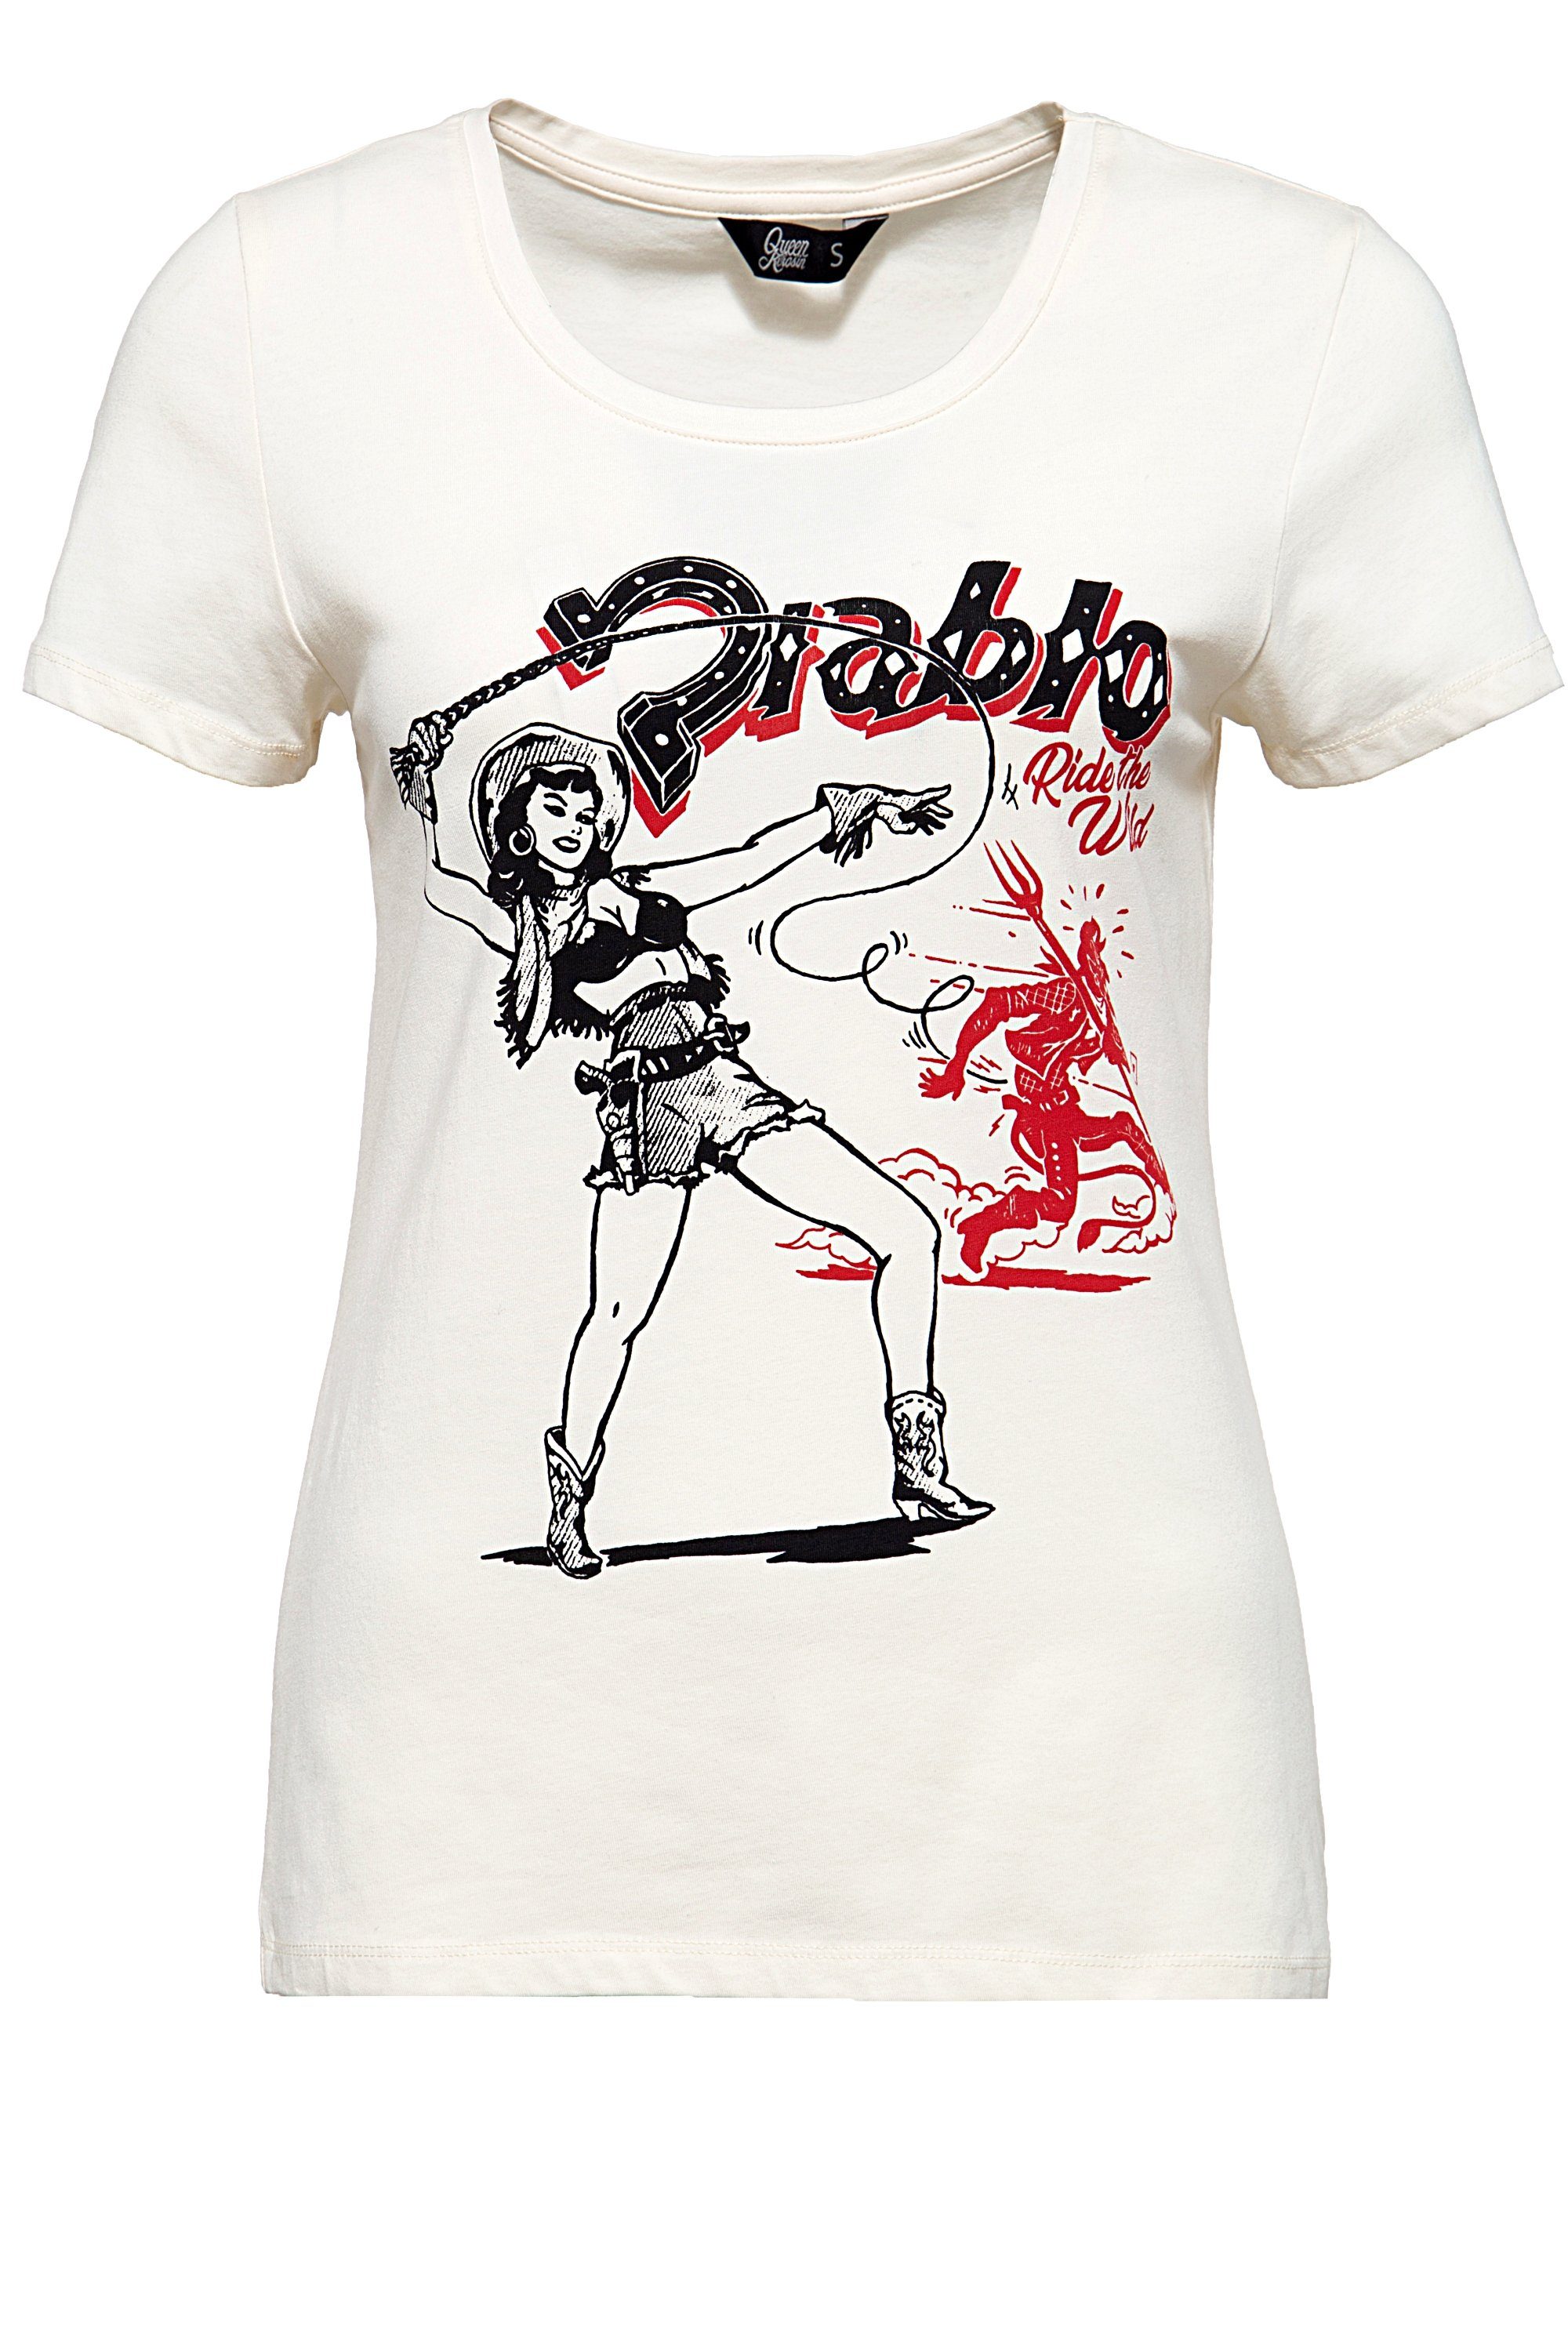 QueenKerosin T-Shirt Diablo im Vintage Look